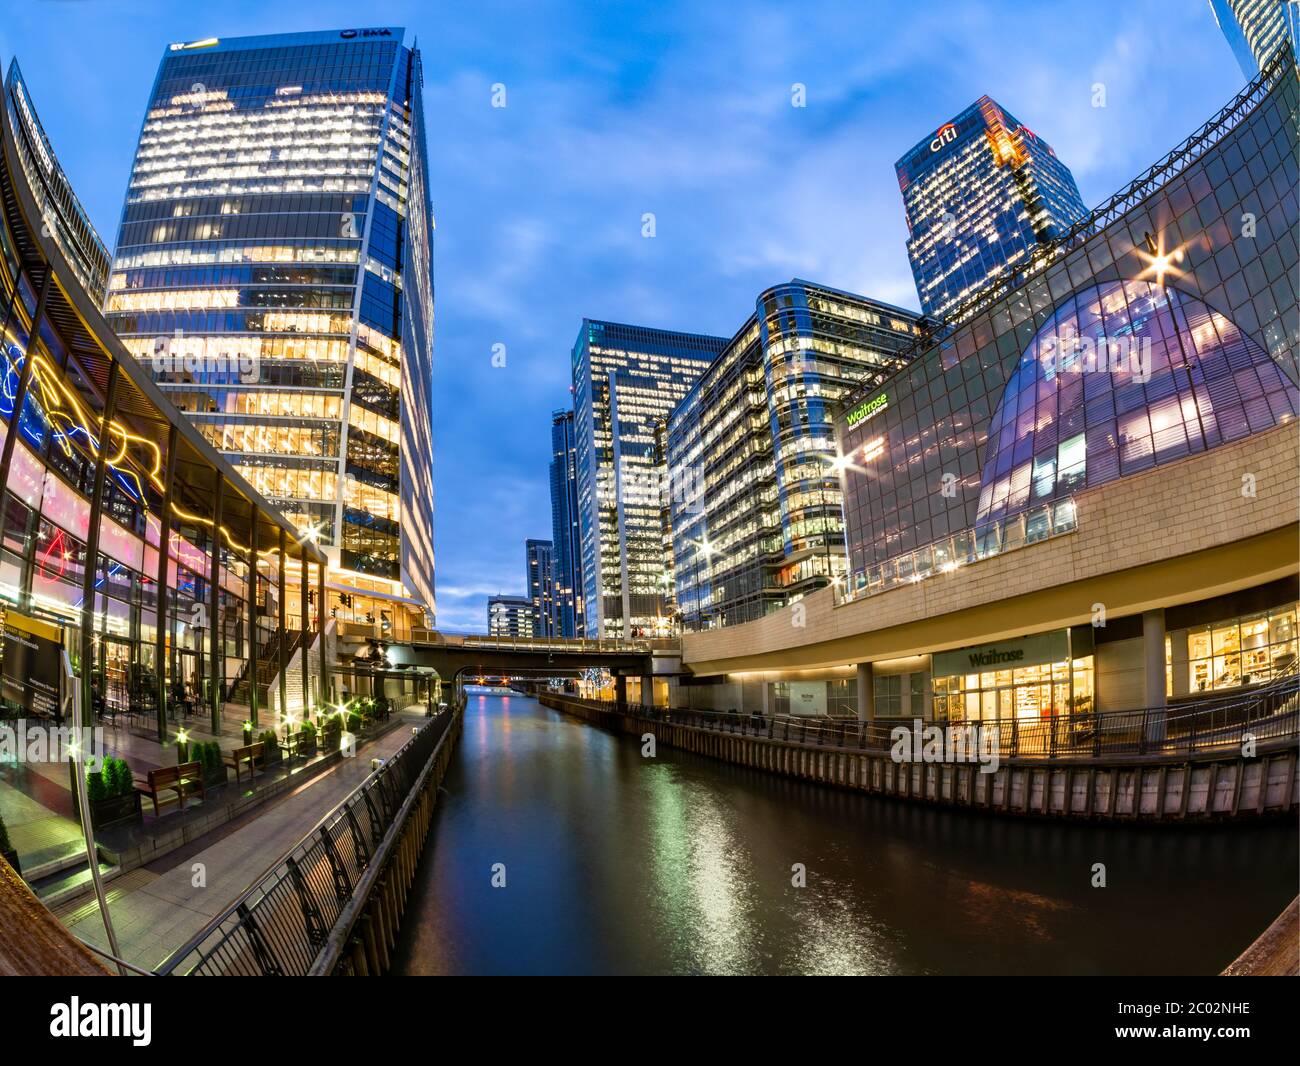 Canary Wharf, Londres, Angleterre - 11 décembre 2019 : scène nocturne du célèbre bâtiment moderne de Canary Wharf illuminé du crépuscule au Royaume-Uni Banque D'Images